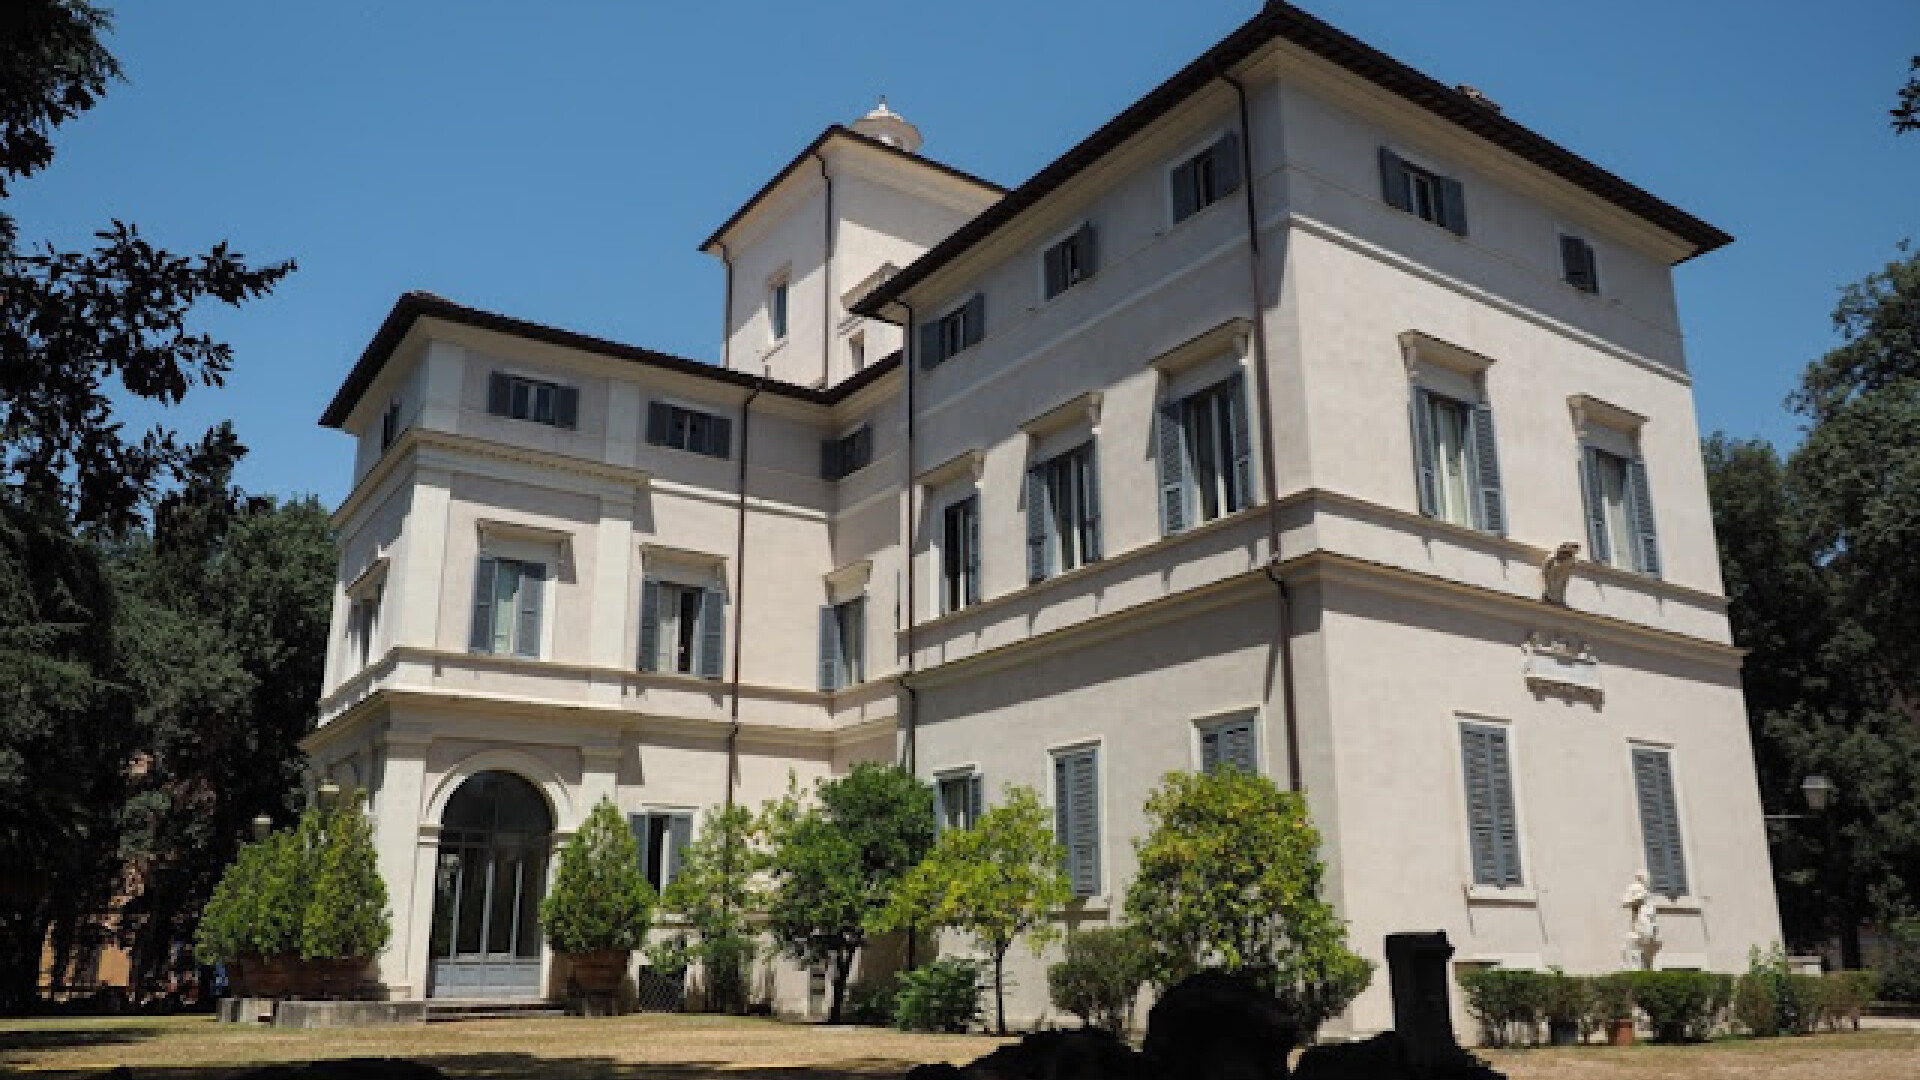 O vilă din Roma a fost scoasă la vânzare pentru 500.000.000 de euro. Ce o face specială